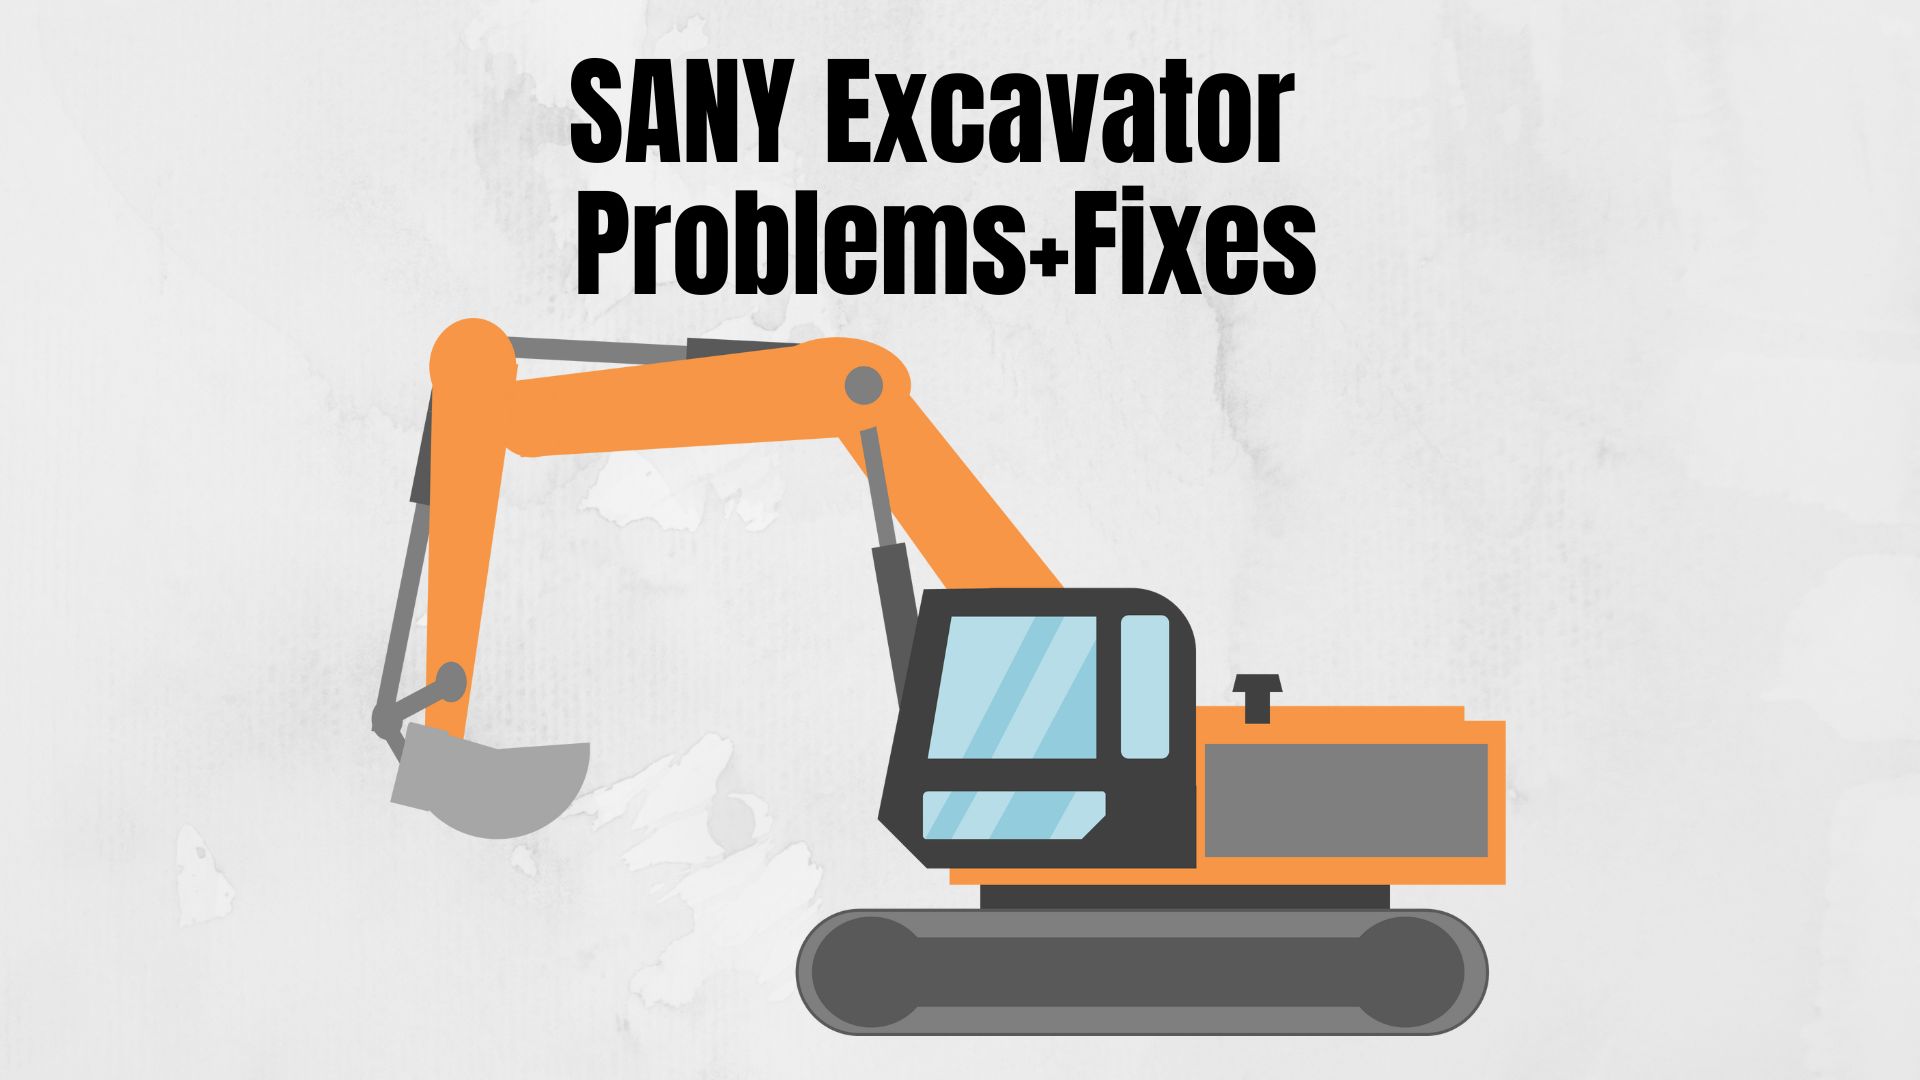 SANY Excavator Problems